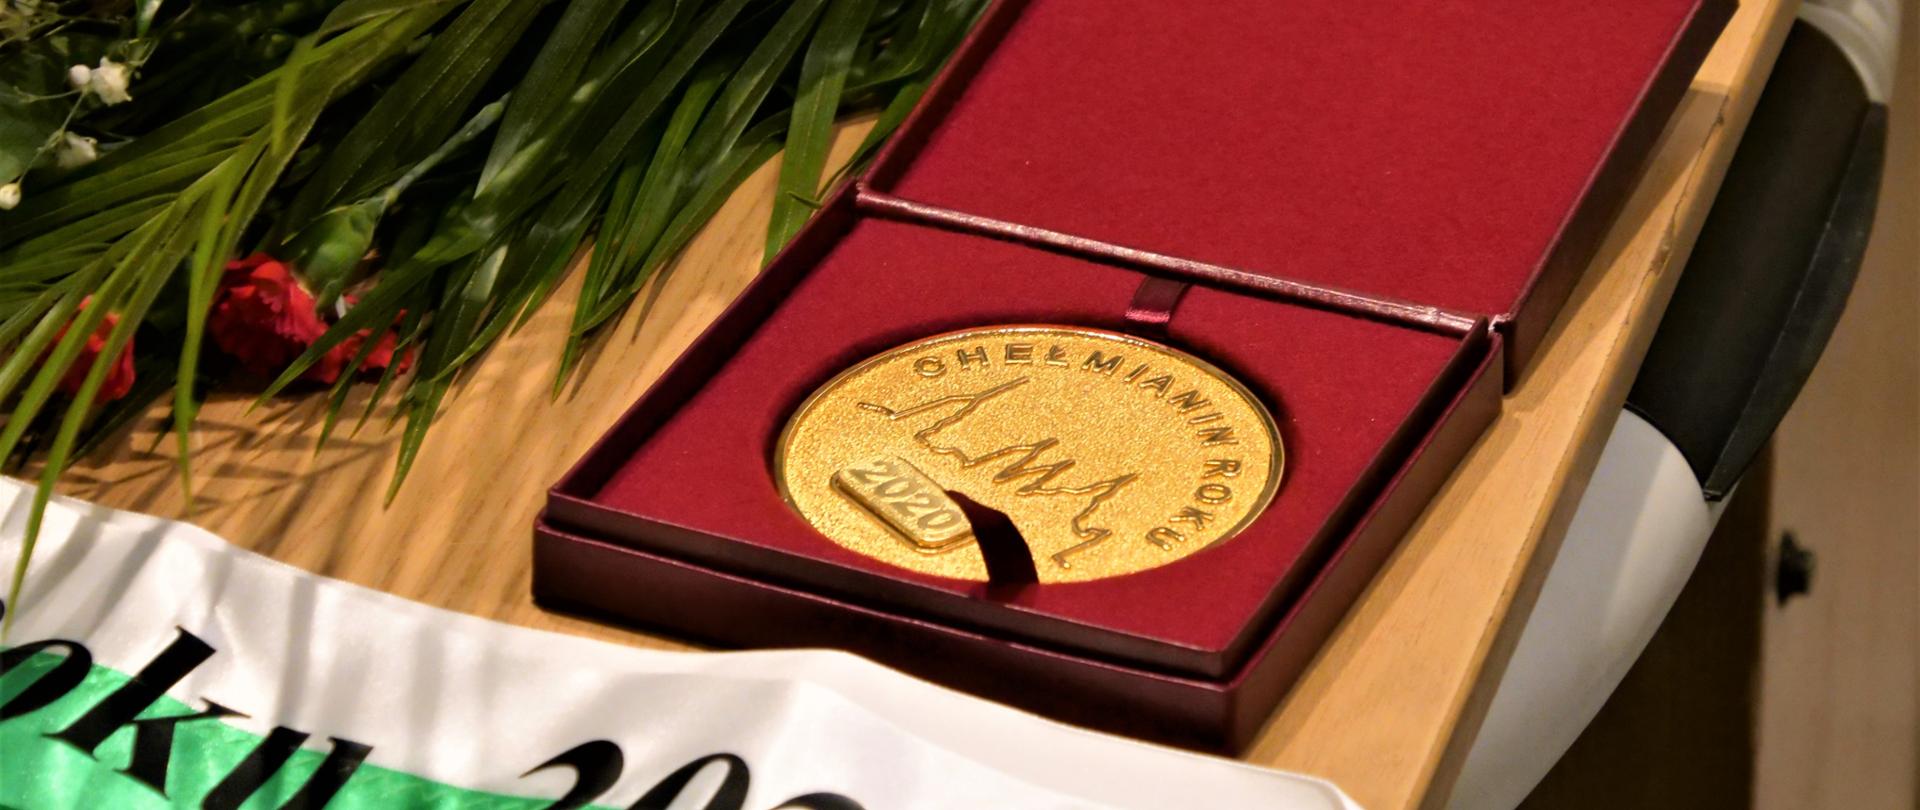 Zdjęcie przedstawia złoty medal leżący na stole w etui. Przed medalem leży szarfa z napisem "Chełmianin Roku 2020"